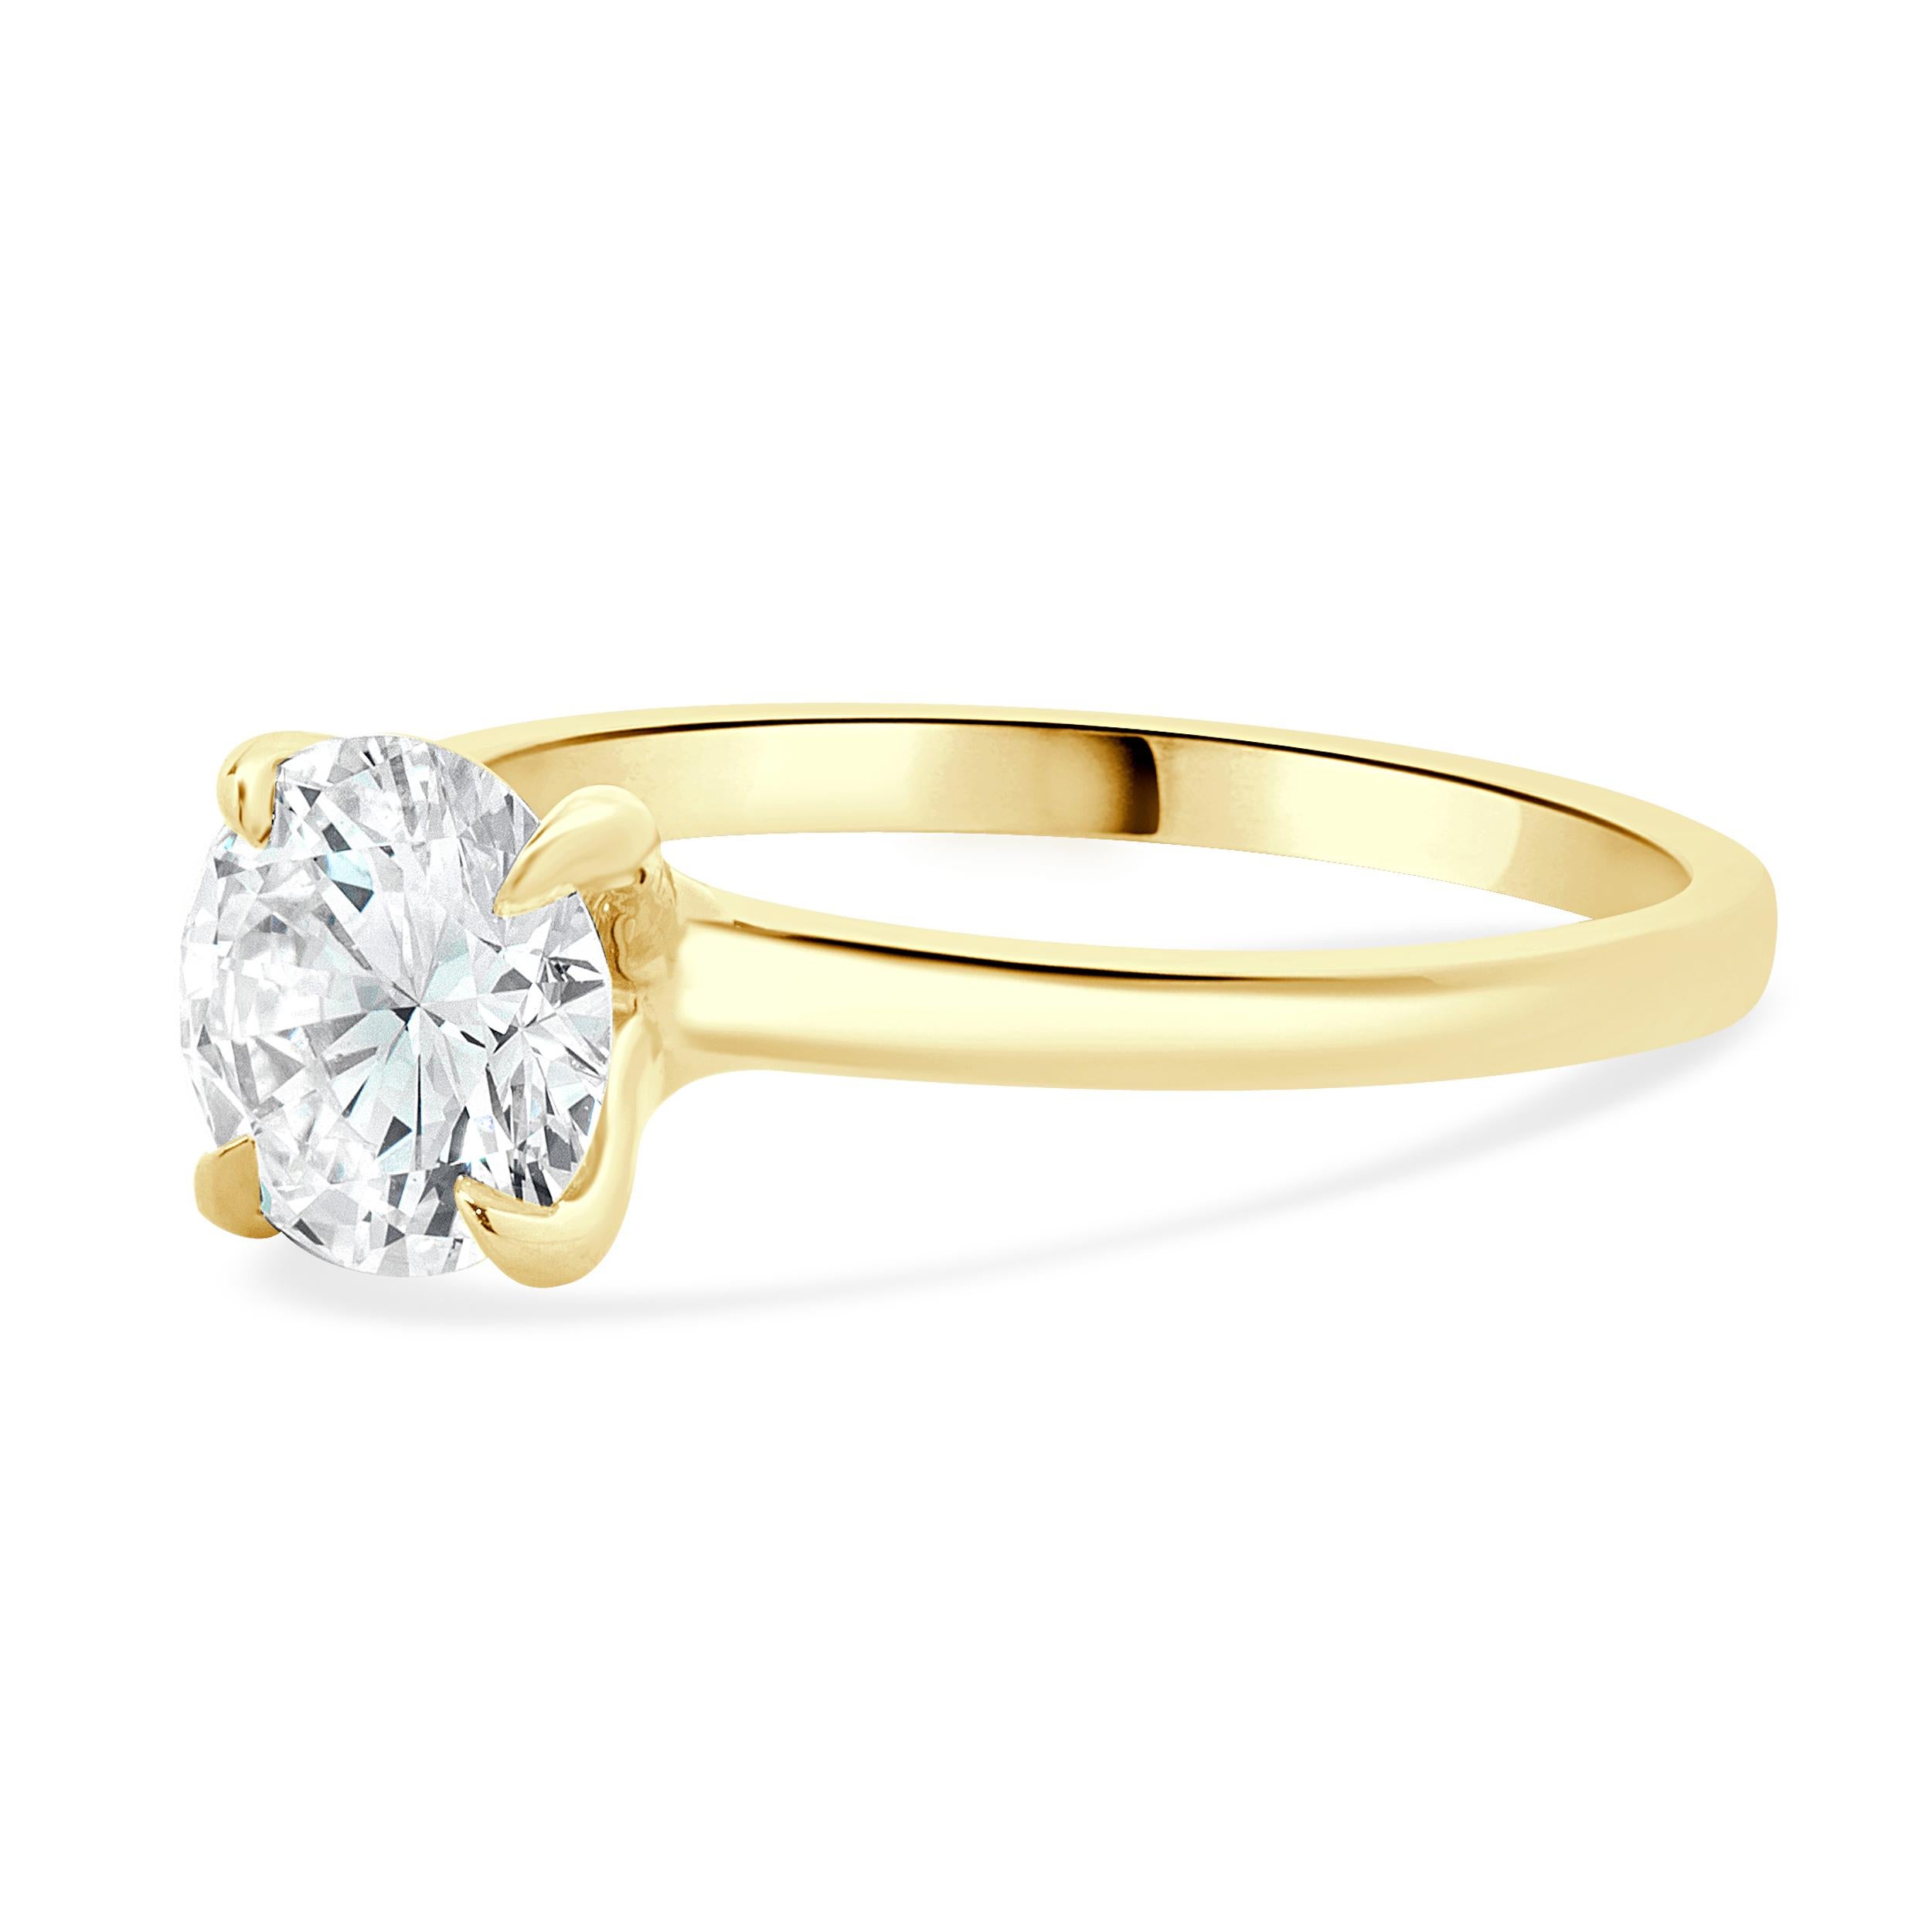 Concepteur : Custom
Matériau : Or jaune 14K
Diamant : 1 rond de taille brillant = 1,06ct
Couleur : G
Clarté : VS1
GIA : 2235059617
Dimensions : la partie supérieure de l'anneau mesure 1.8 mm de large
Taille de la bague : 6,5 (taille complémentaire